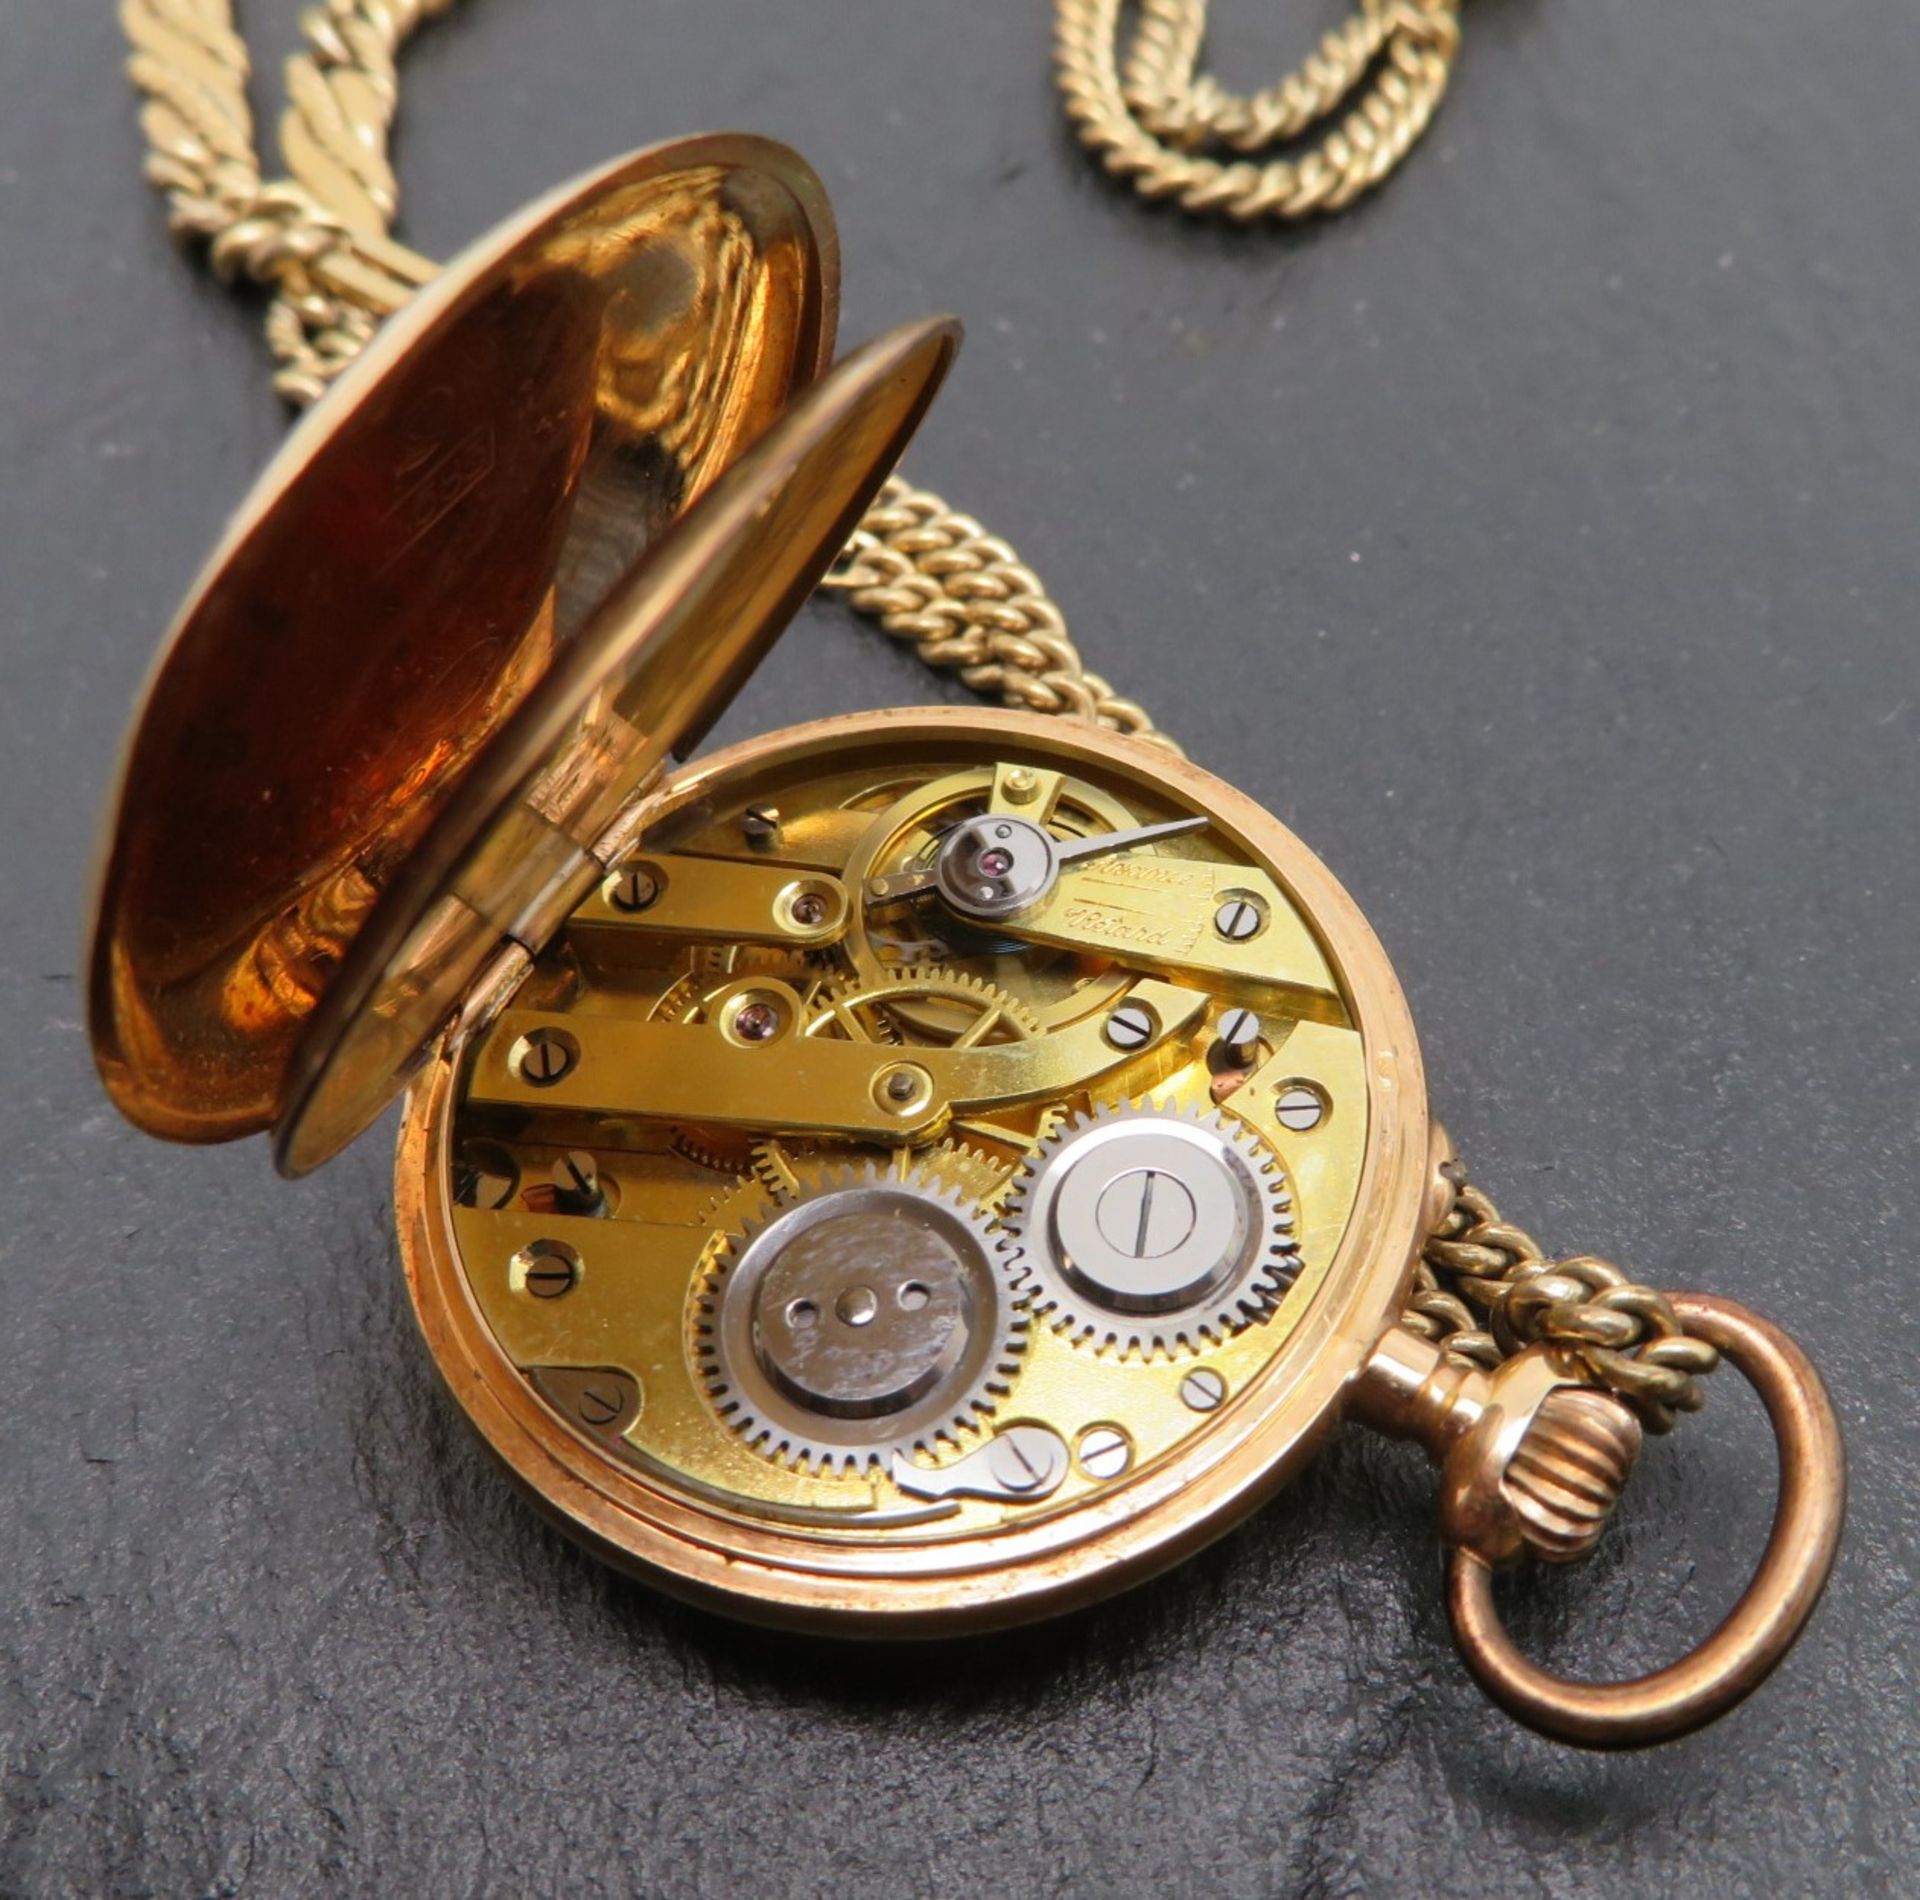 Damentaschenuhr an vergoldeter Uhrenkette, Gehäuse Gelbgold 585/000, punziert, Innendeckel Metall, - Image 3 of 3